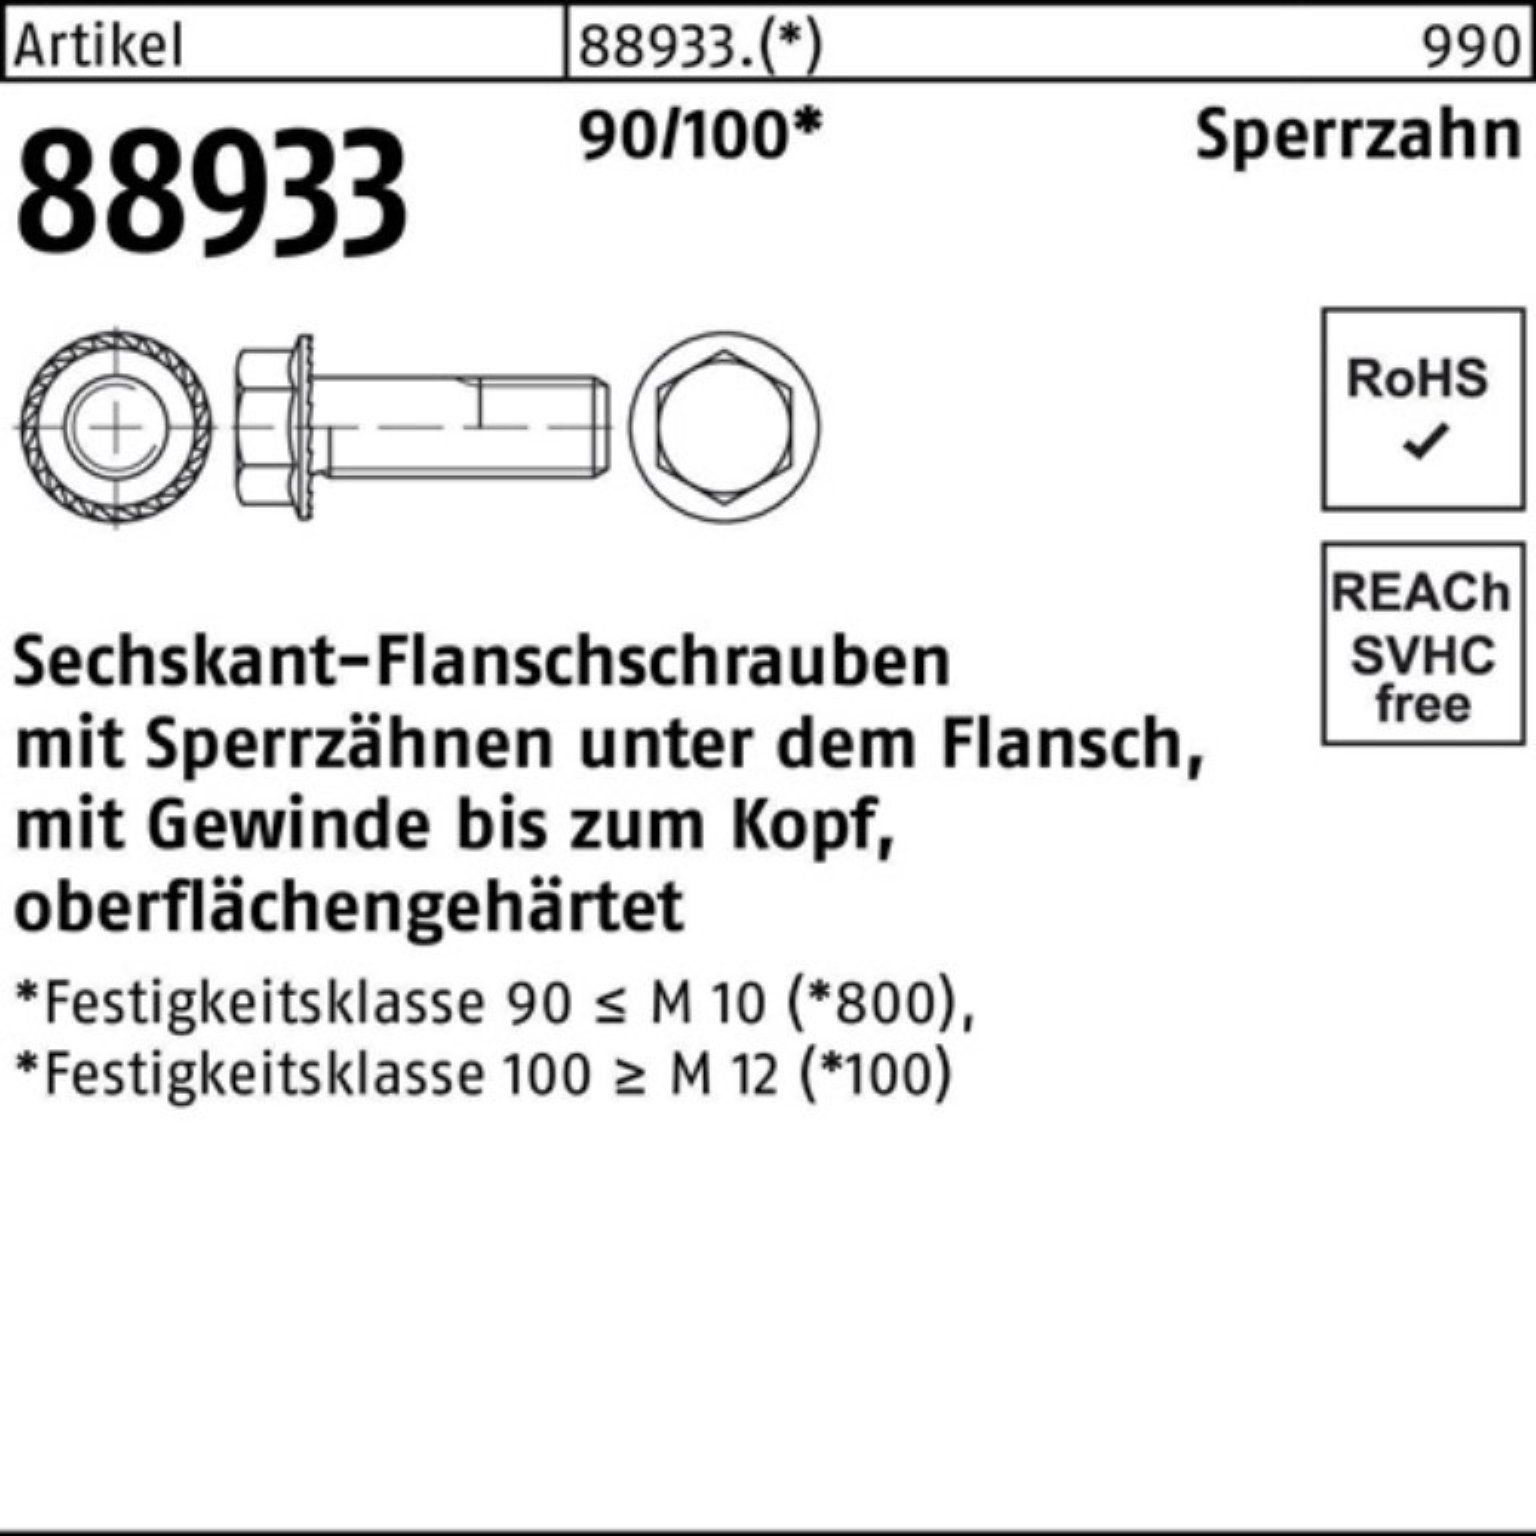 [Höchste Qualität haben!] Reyher Schraube 90/100 Pack M10x R Sechskantflanschschraube Sperrz. 30 200er VG 88933